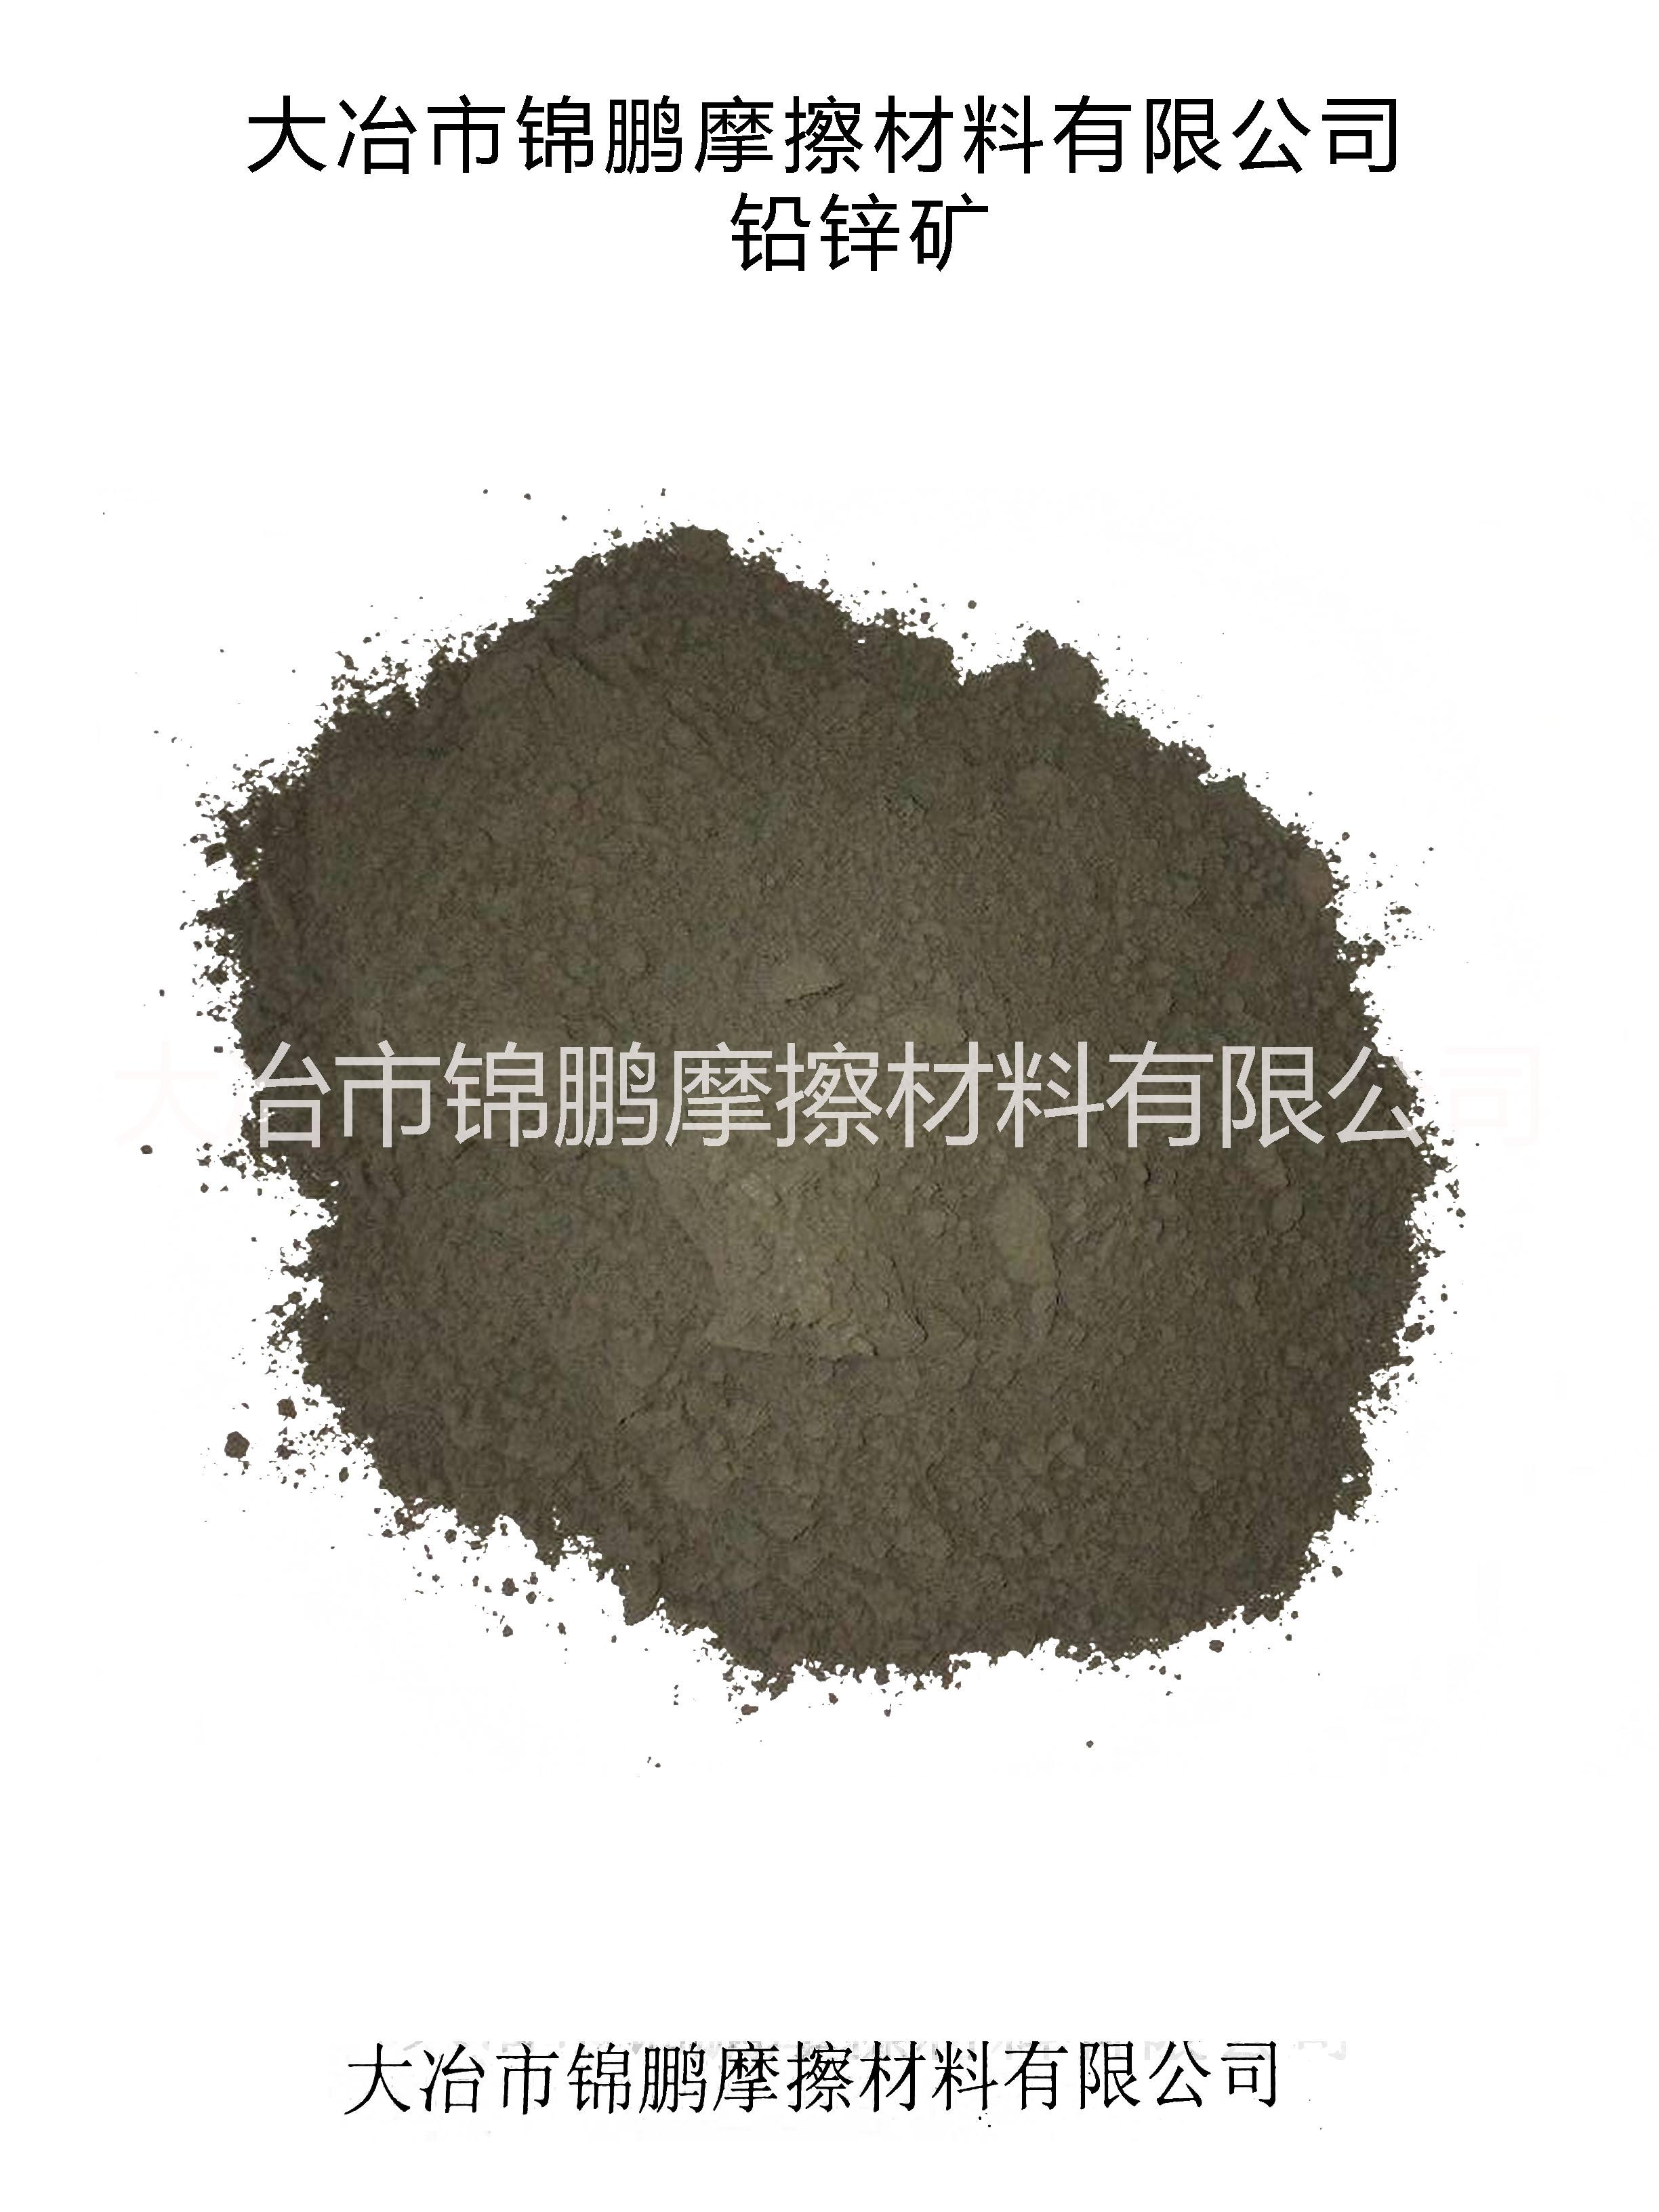 铅锌矿粉Lead-zinc ore powder图片